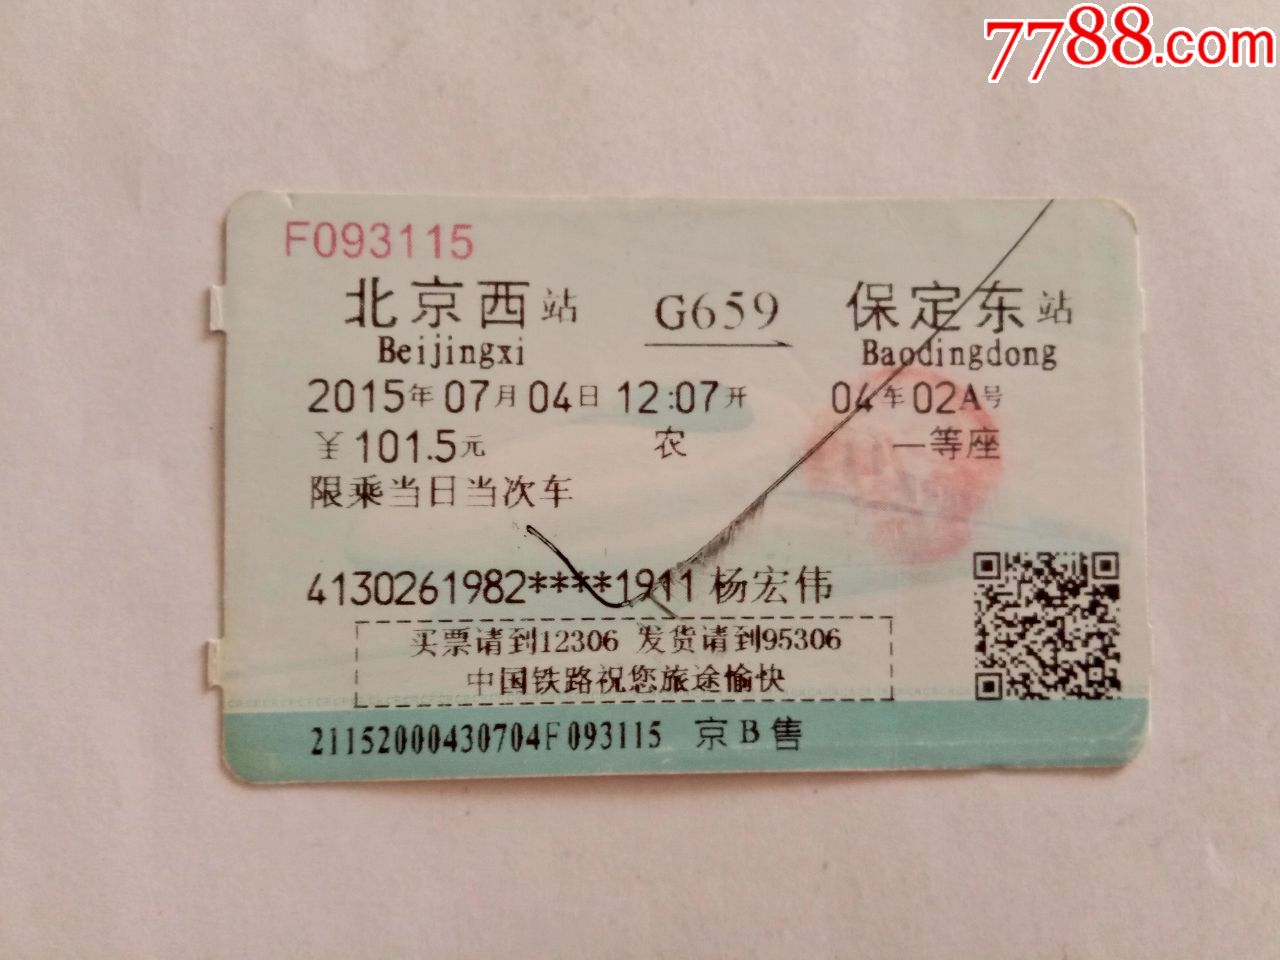 北京西-G659次-保定东